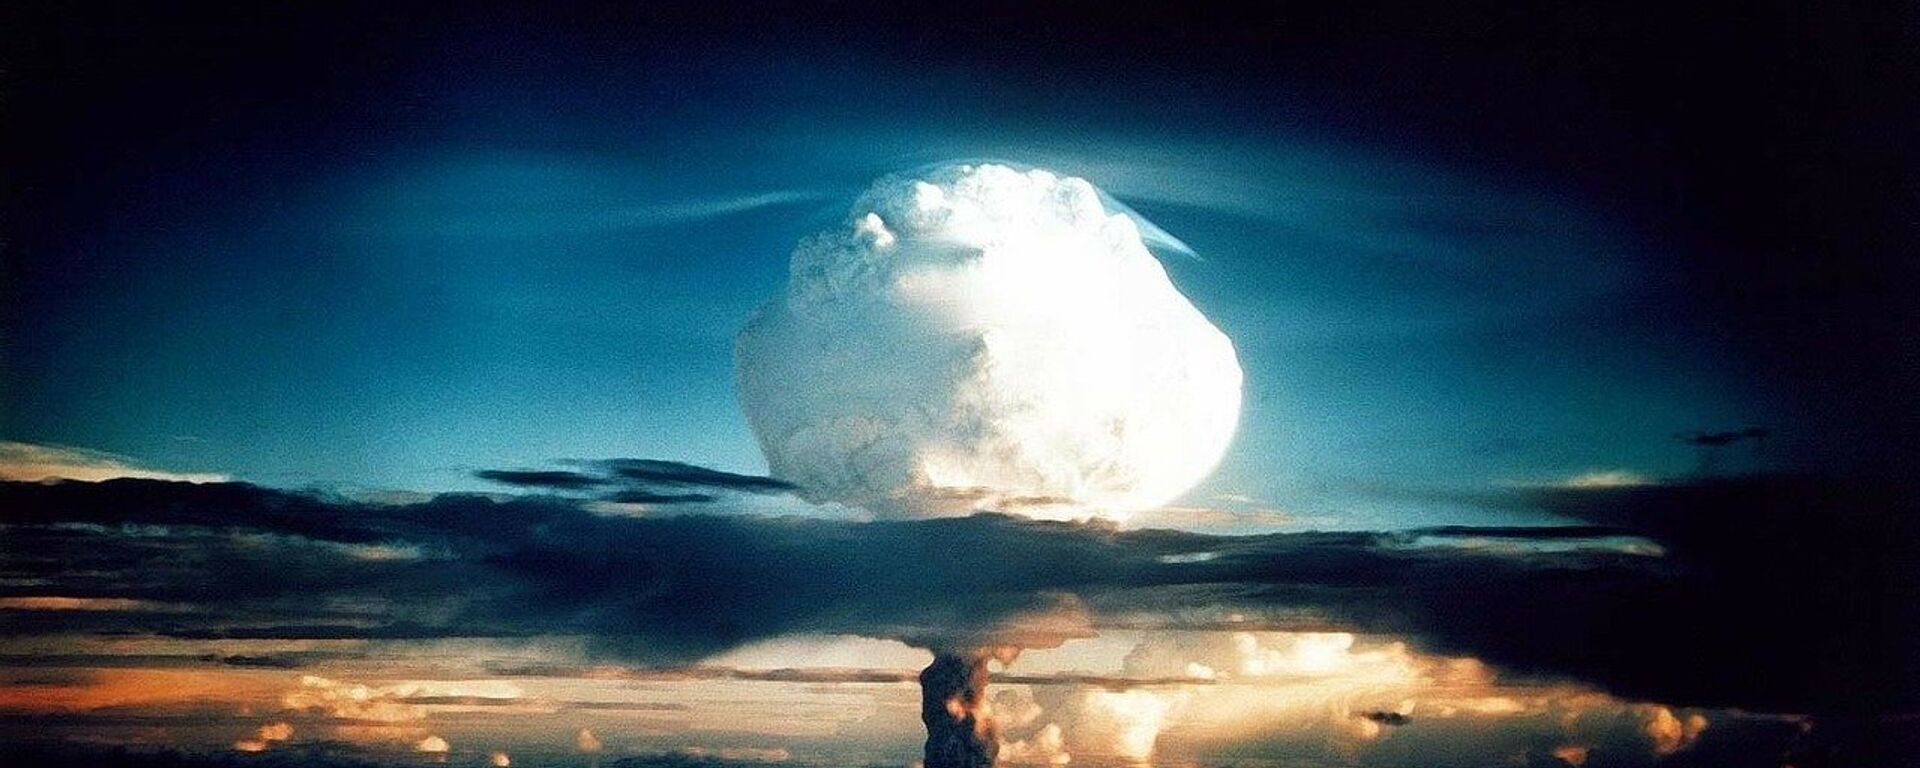 Explosión nuclear (imagen referencial) - Sputnik Mundo, 1920, 18.01.2021